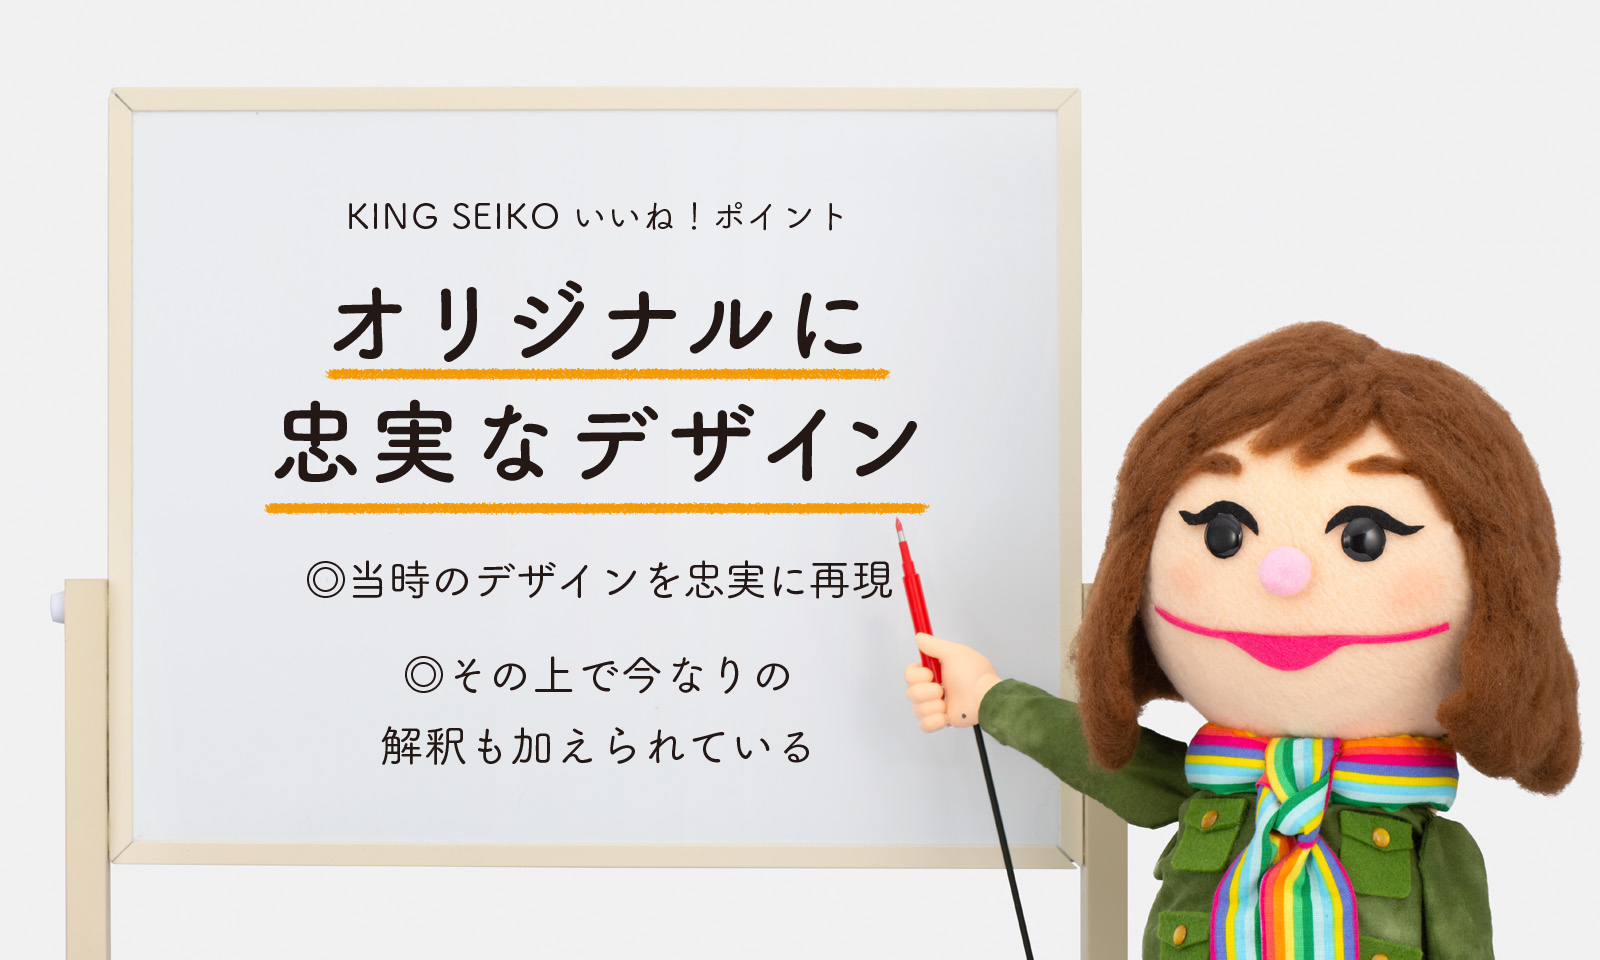 KING SEIKO いいね！ポイント オリジナルに忠実なデザイン ◎当時のデザインを忠実に再現 ◎その上で今なりの解釈も加えられている